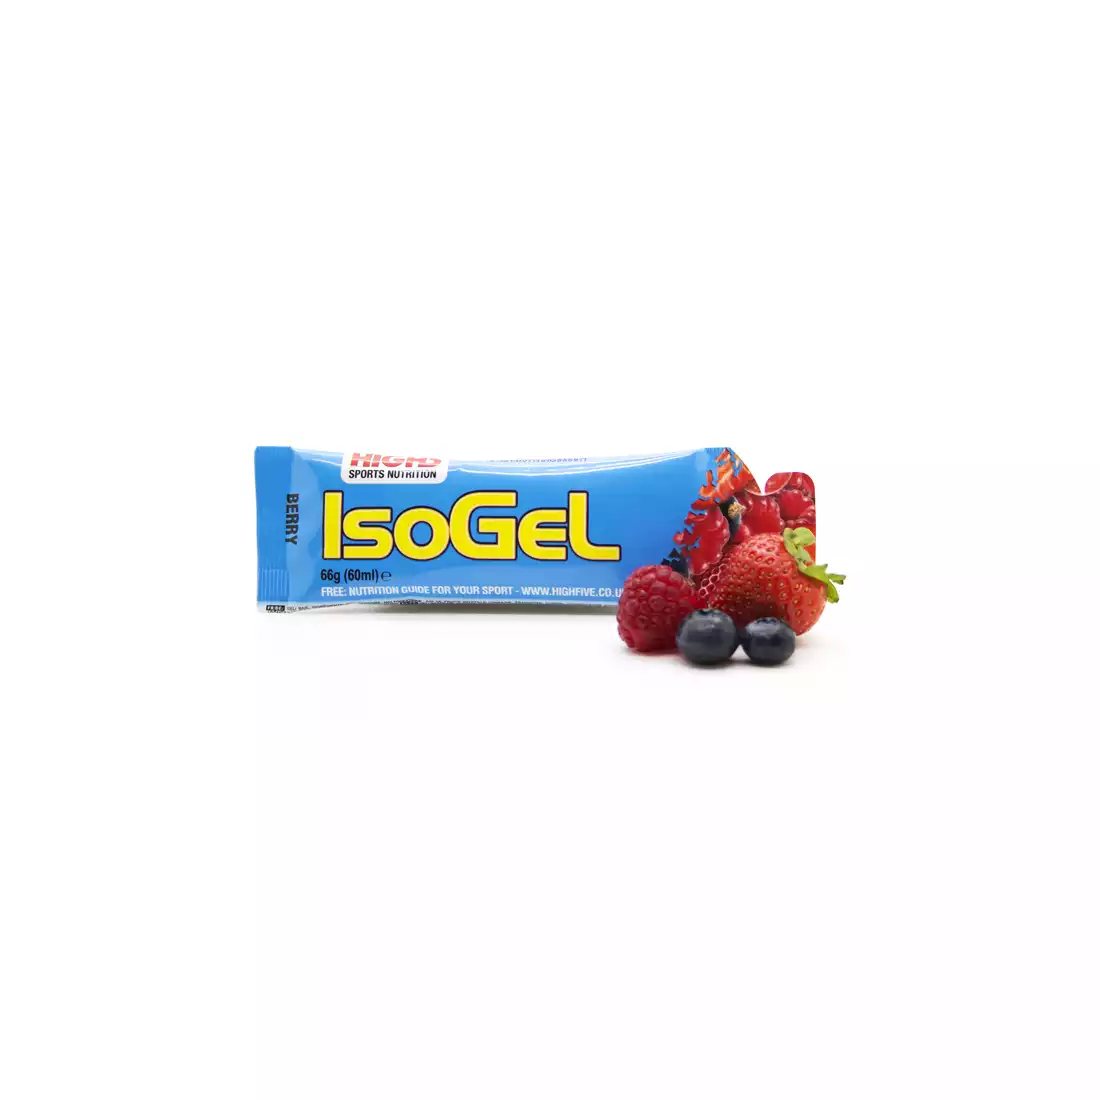 HIGH5 IsoGel żel energetyczny smak: Jagodowy poj. 60ml